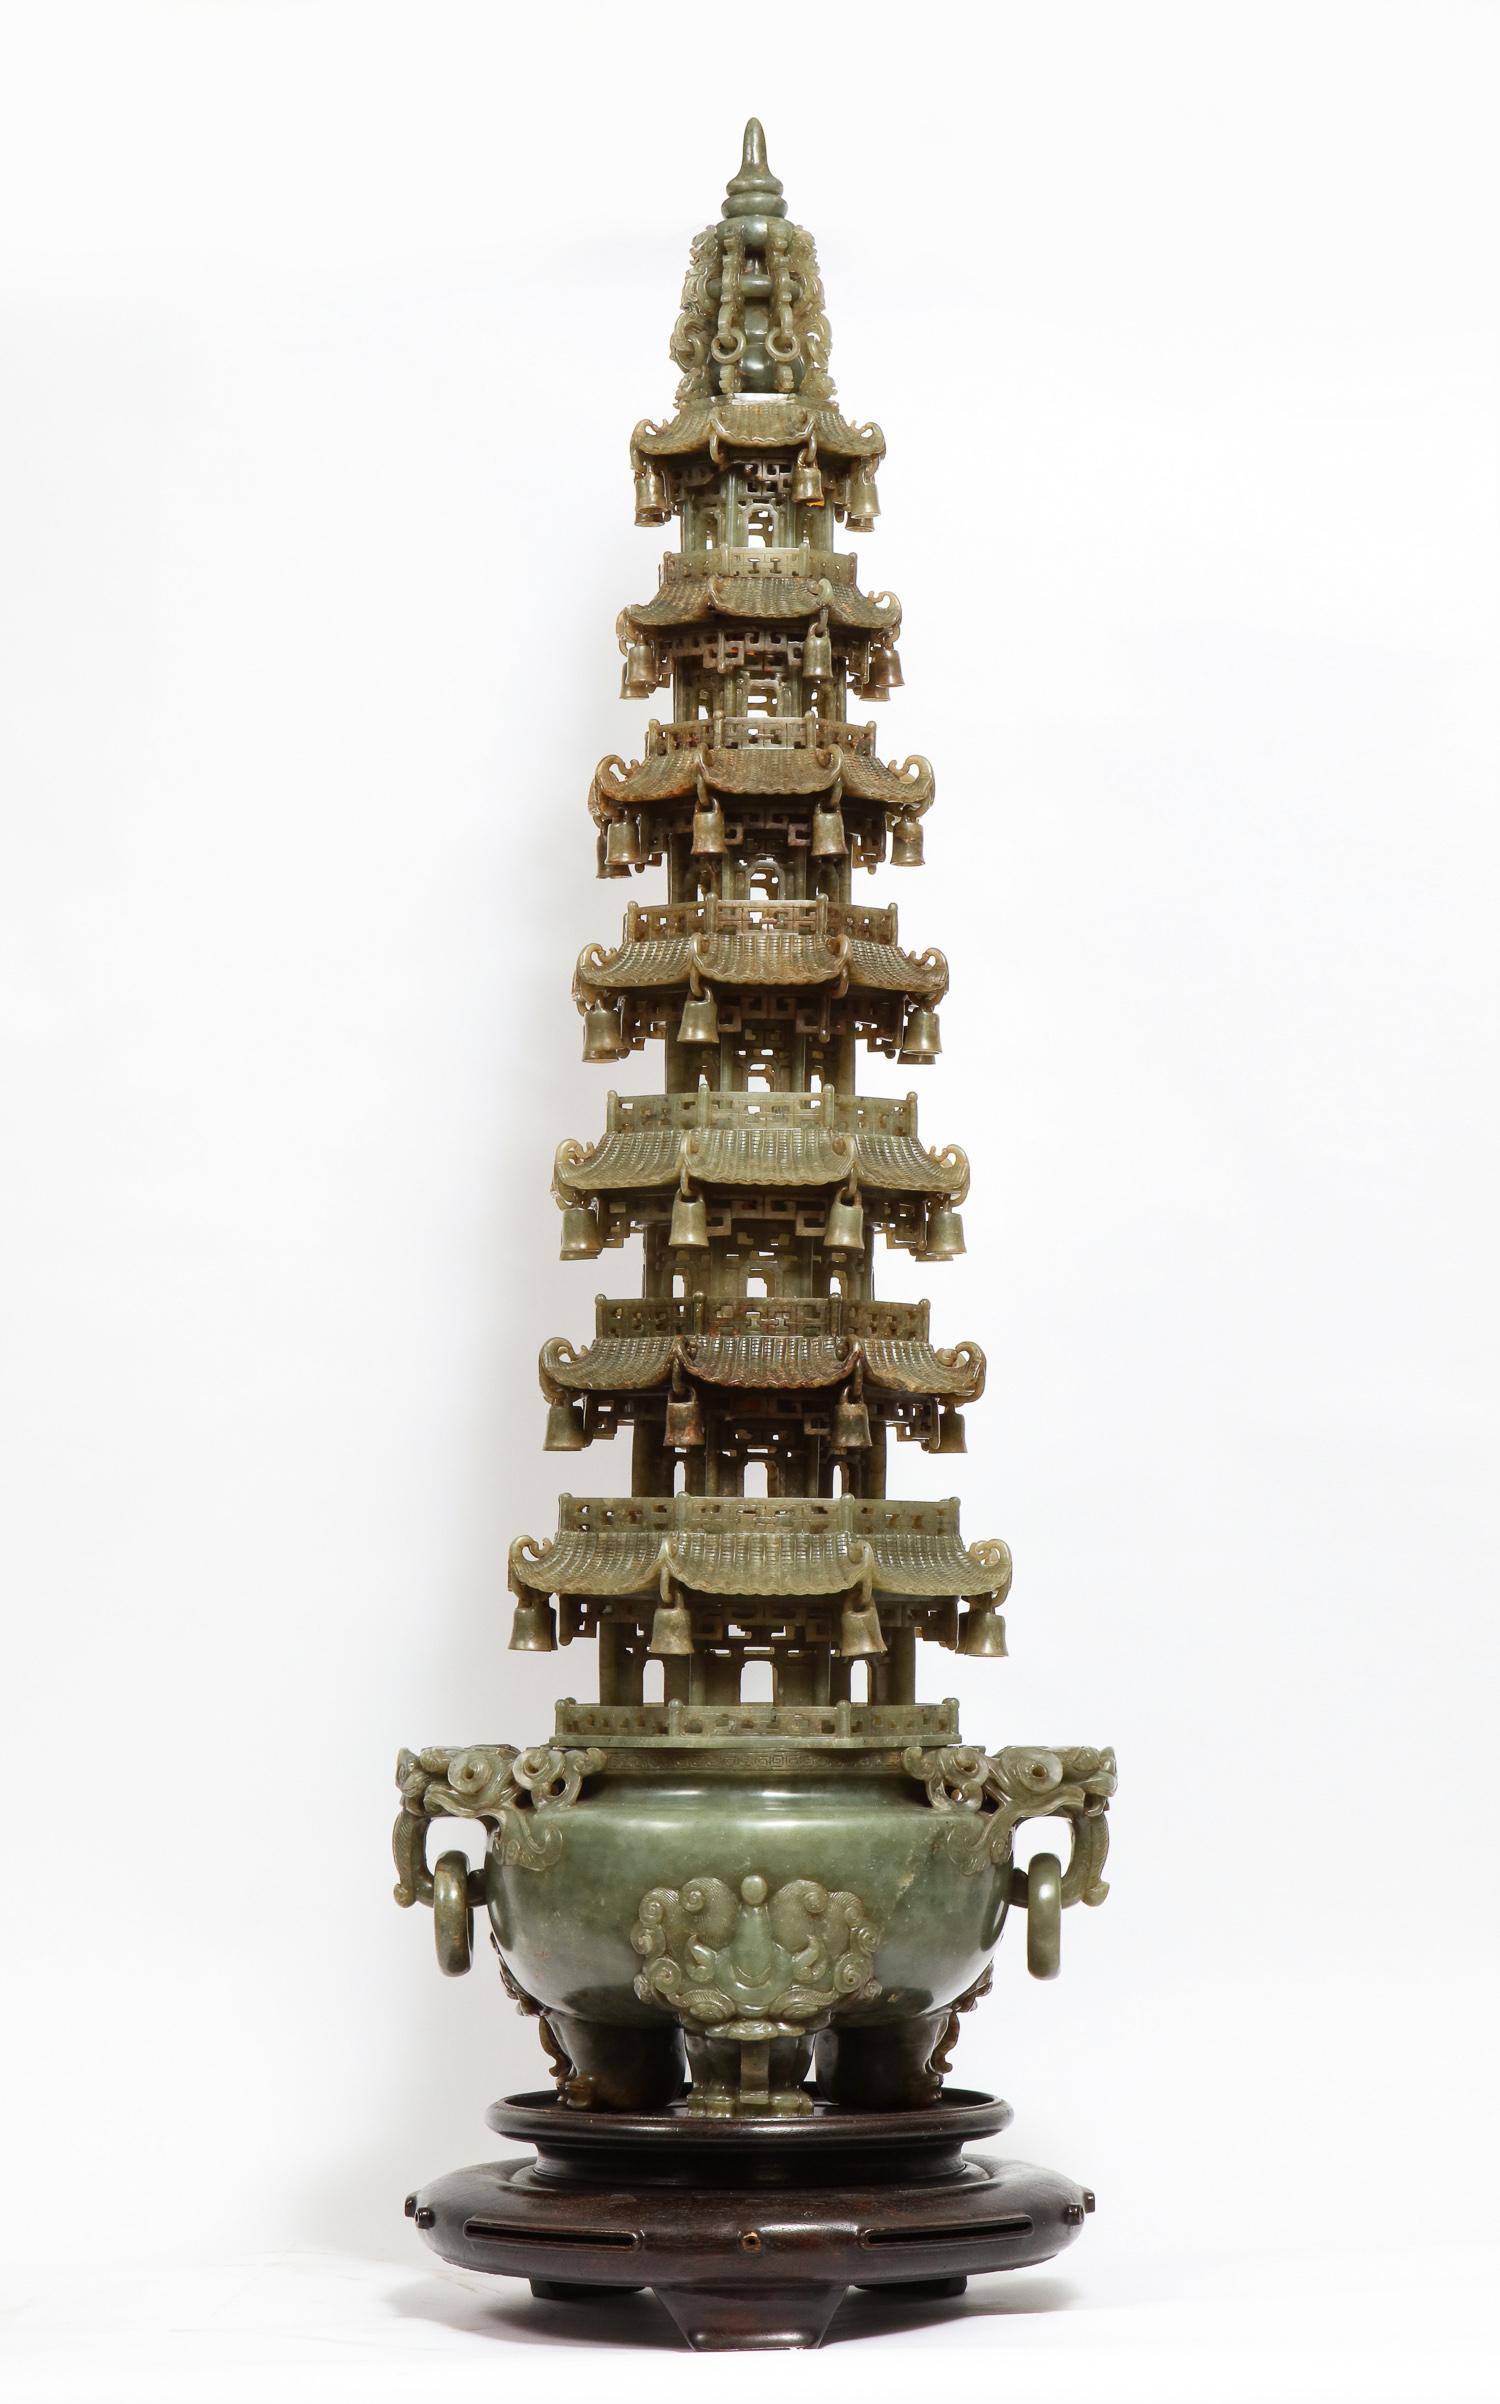 Monumental encensoir pagode chinois en jade serpentin sculpté, début du 20e siècle.

Un encensoir pagode serpentin chinois magistralement sculpté. La base de l'encensoir tripode repose sur des pieds à pattes à tête de lion. Deux poignées en anneau